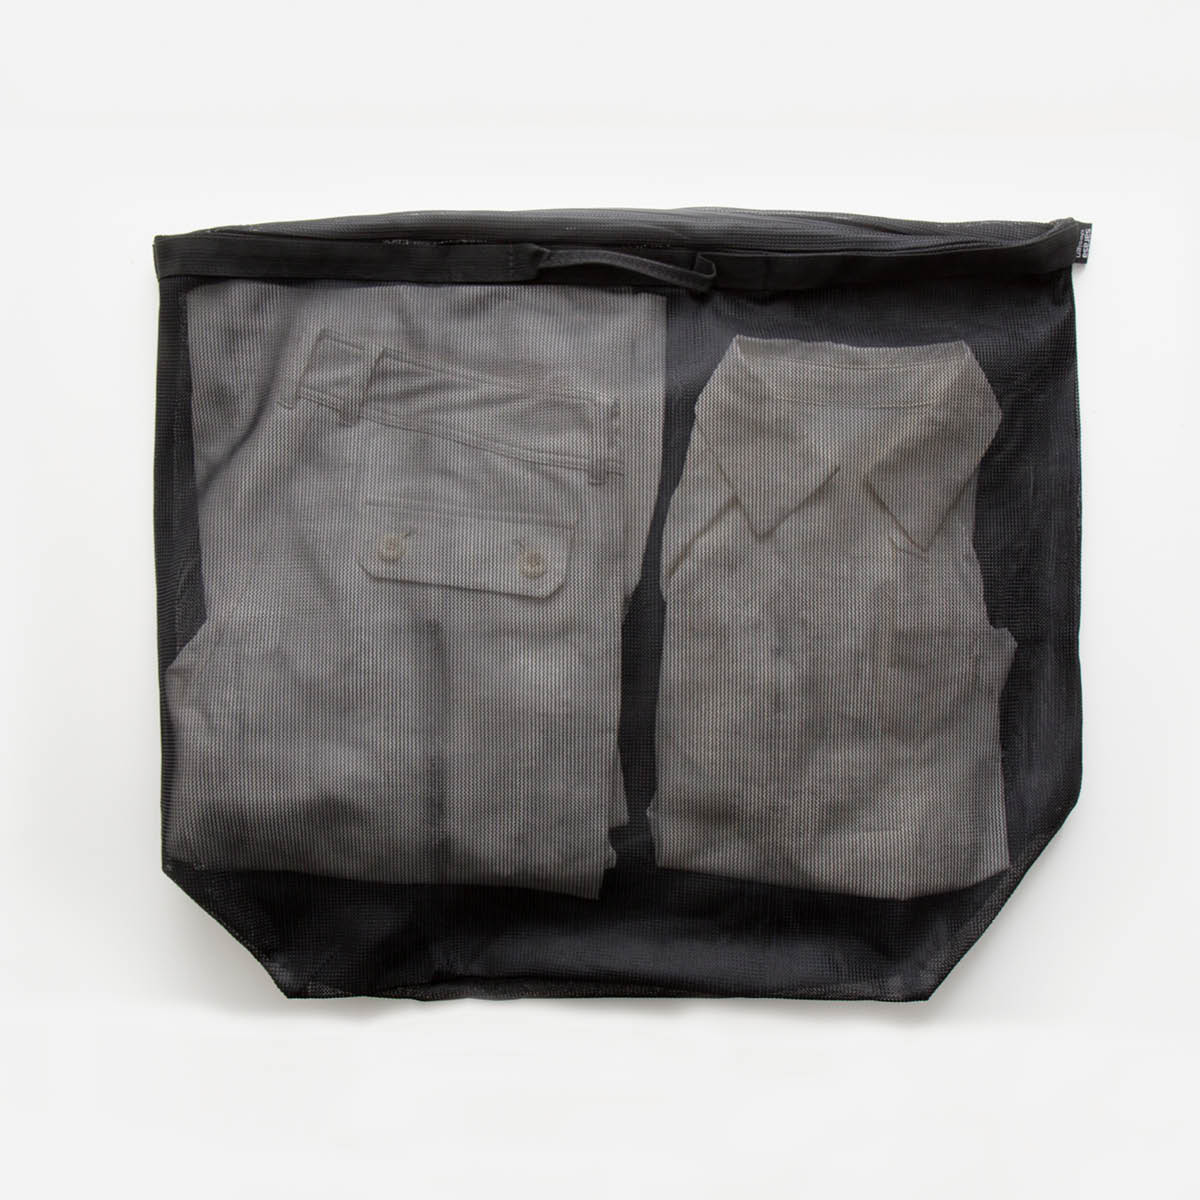 丈夫で長持ちのタフでおしゃれな洗濯ネット｜シンプルなデザインでランドリーバッグとしても使えるランドリーネット…